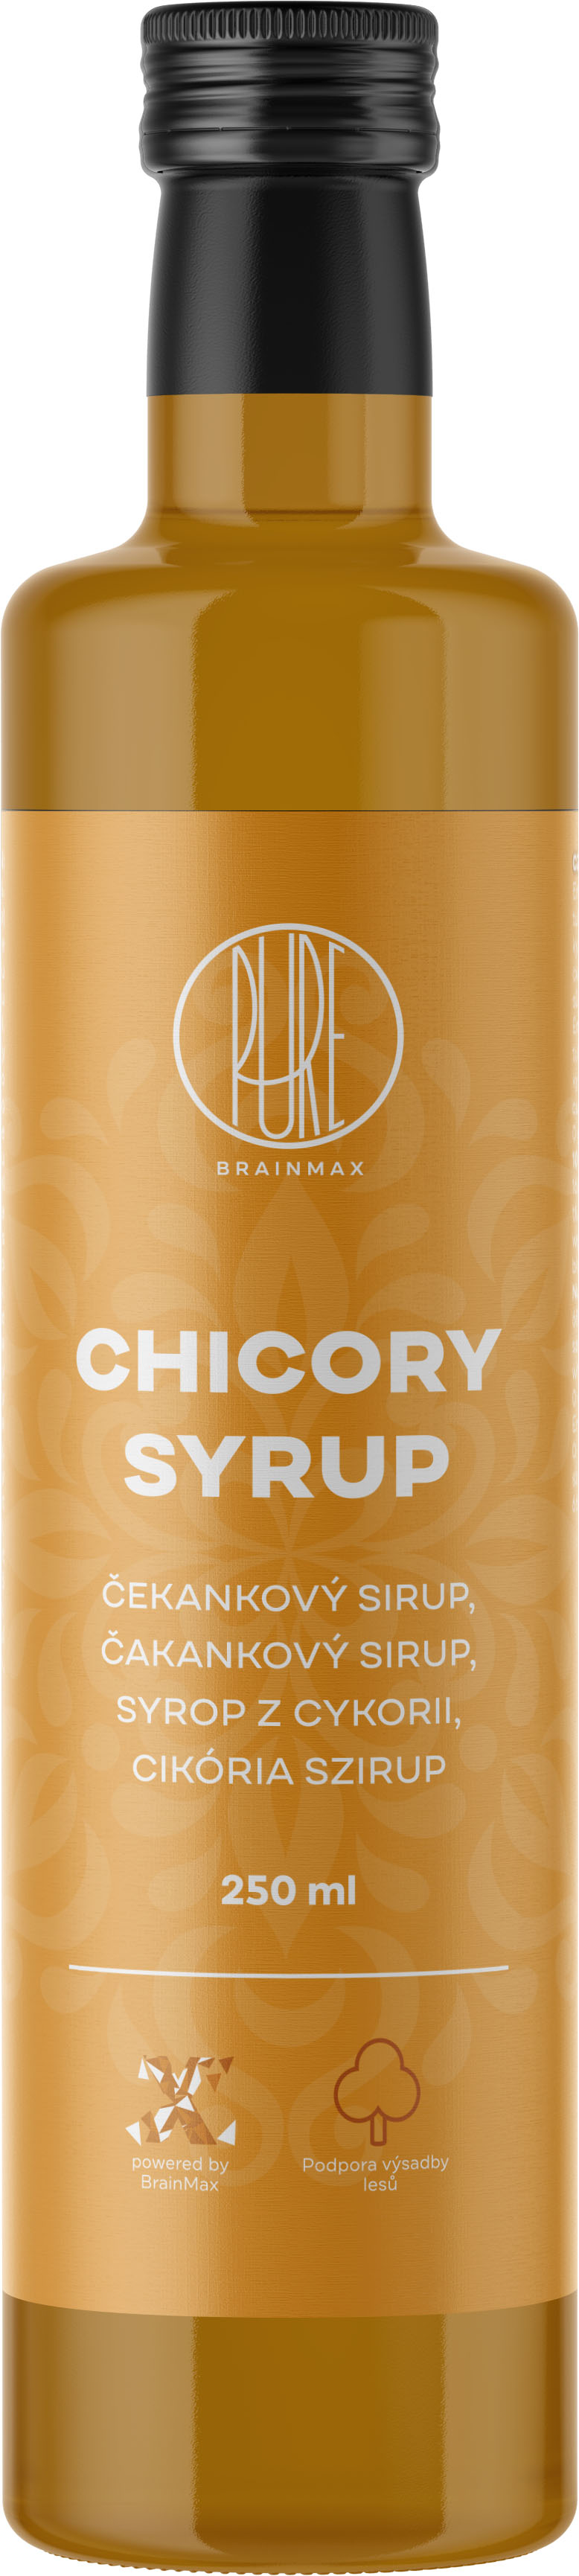 Levně BrainMax Pure Chicory syrup, Čekankový sirup, 250 ml